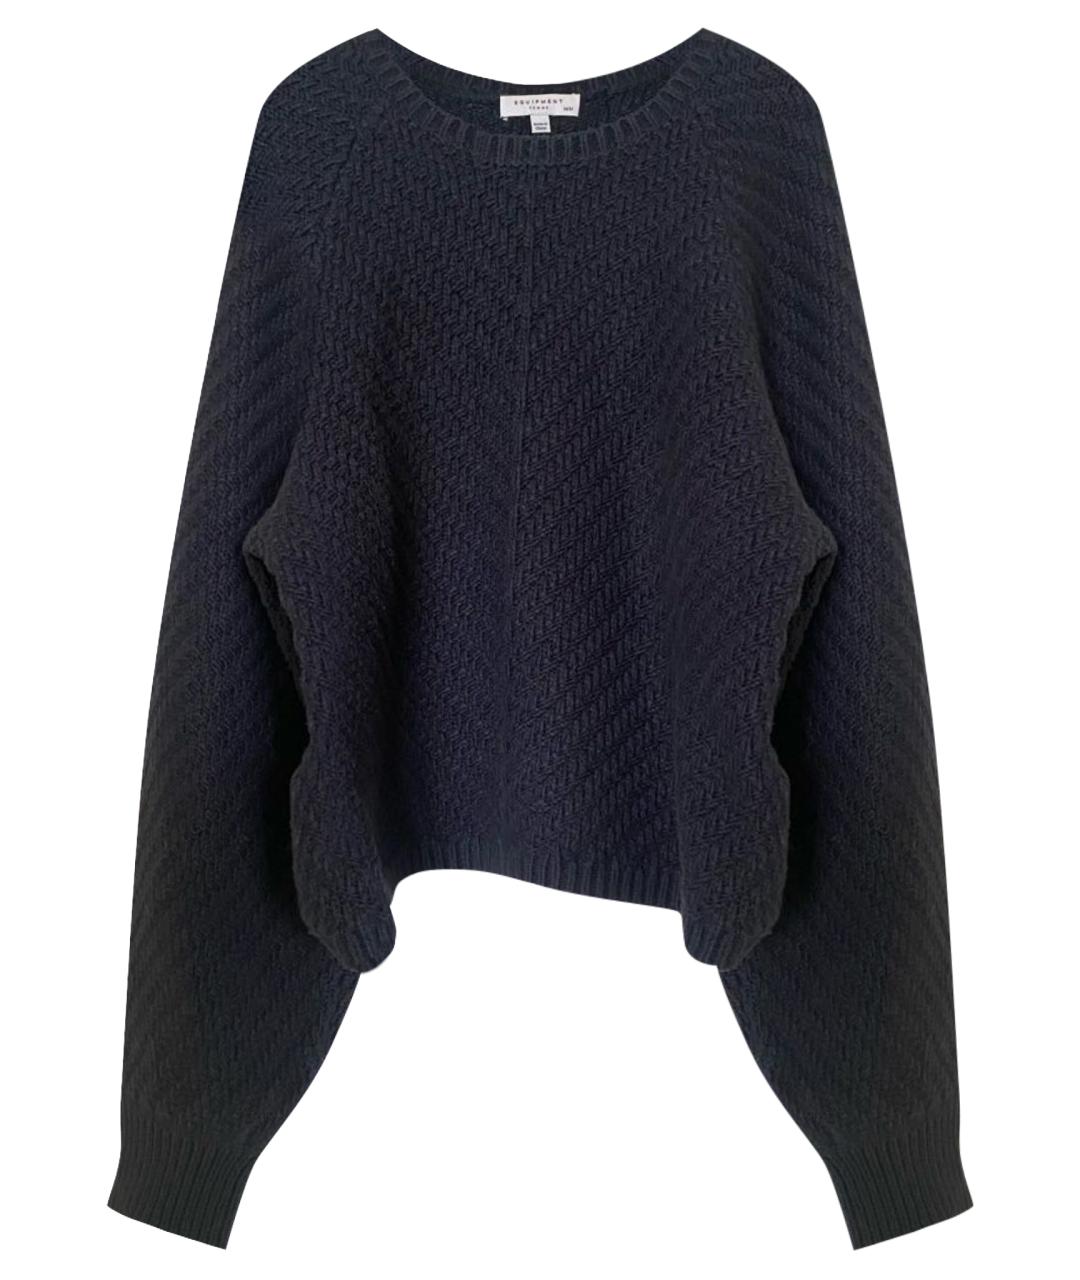 EQUIPMENT Темно-синий кашемировый джемпер / свитер, фото 1